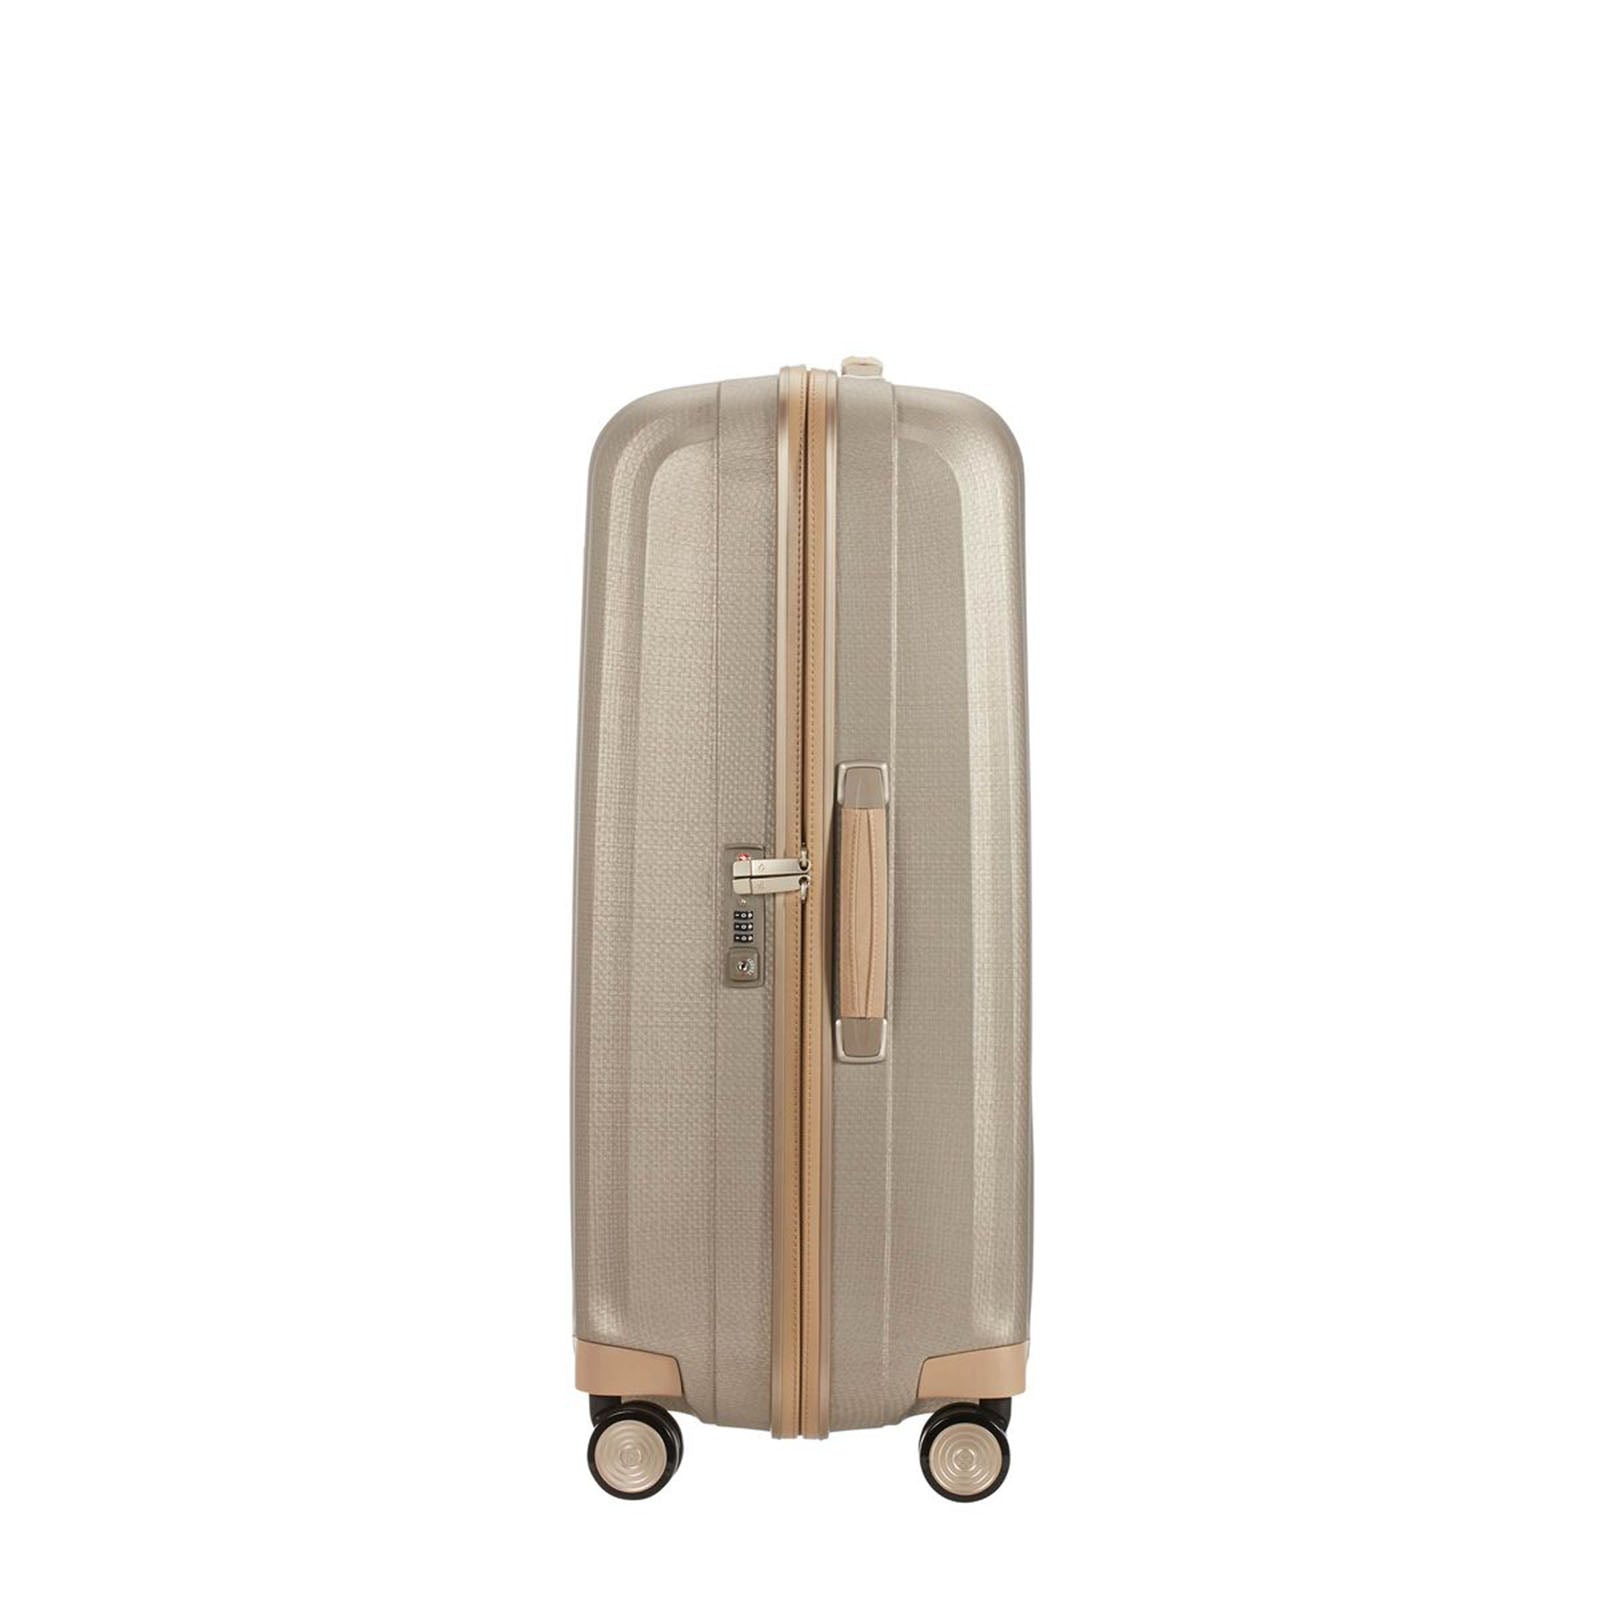 Samsonite-Lite-Cube-Prime-76cm-Suitcase-Ivory-Gold-Handle